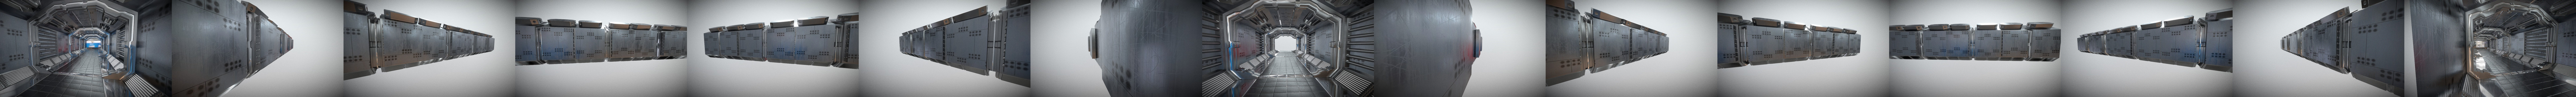 space ship corridor maps